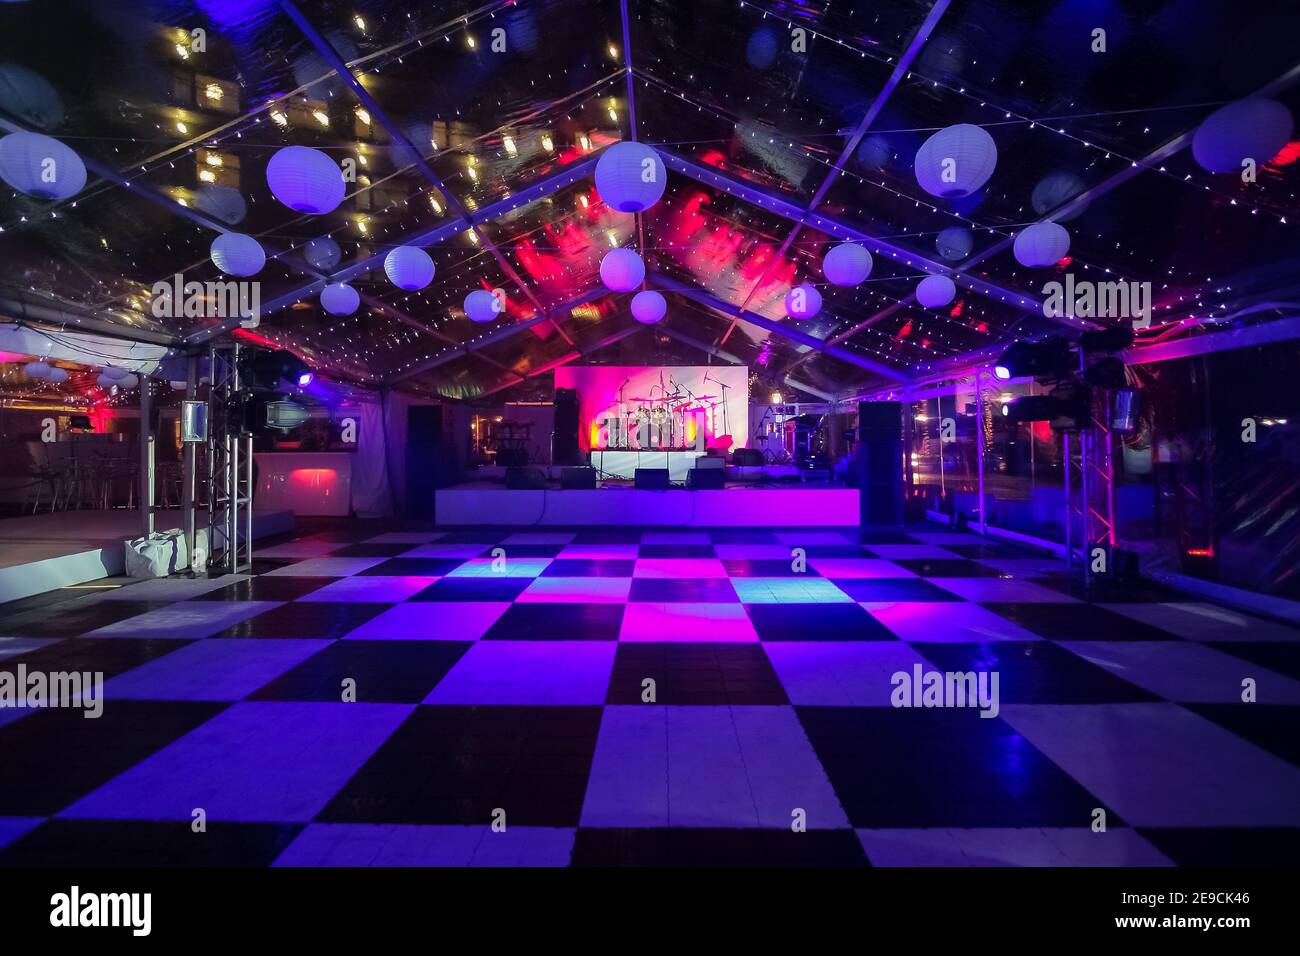 Inneneinrichtung eines Nachtclubs mit bunten Lichtern und kariertem Boden Stockfoto